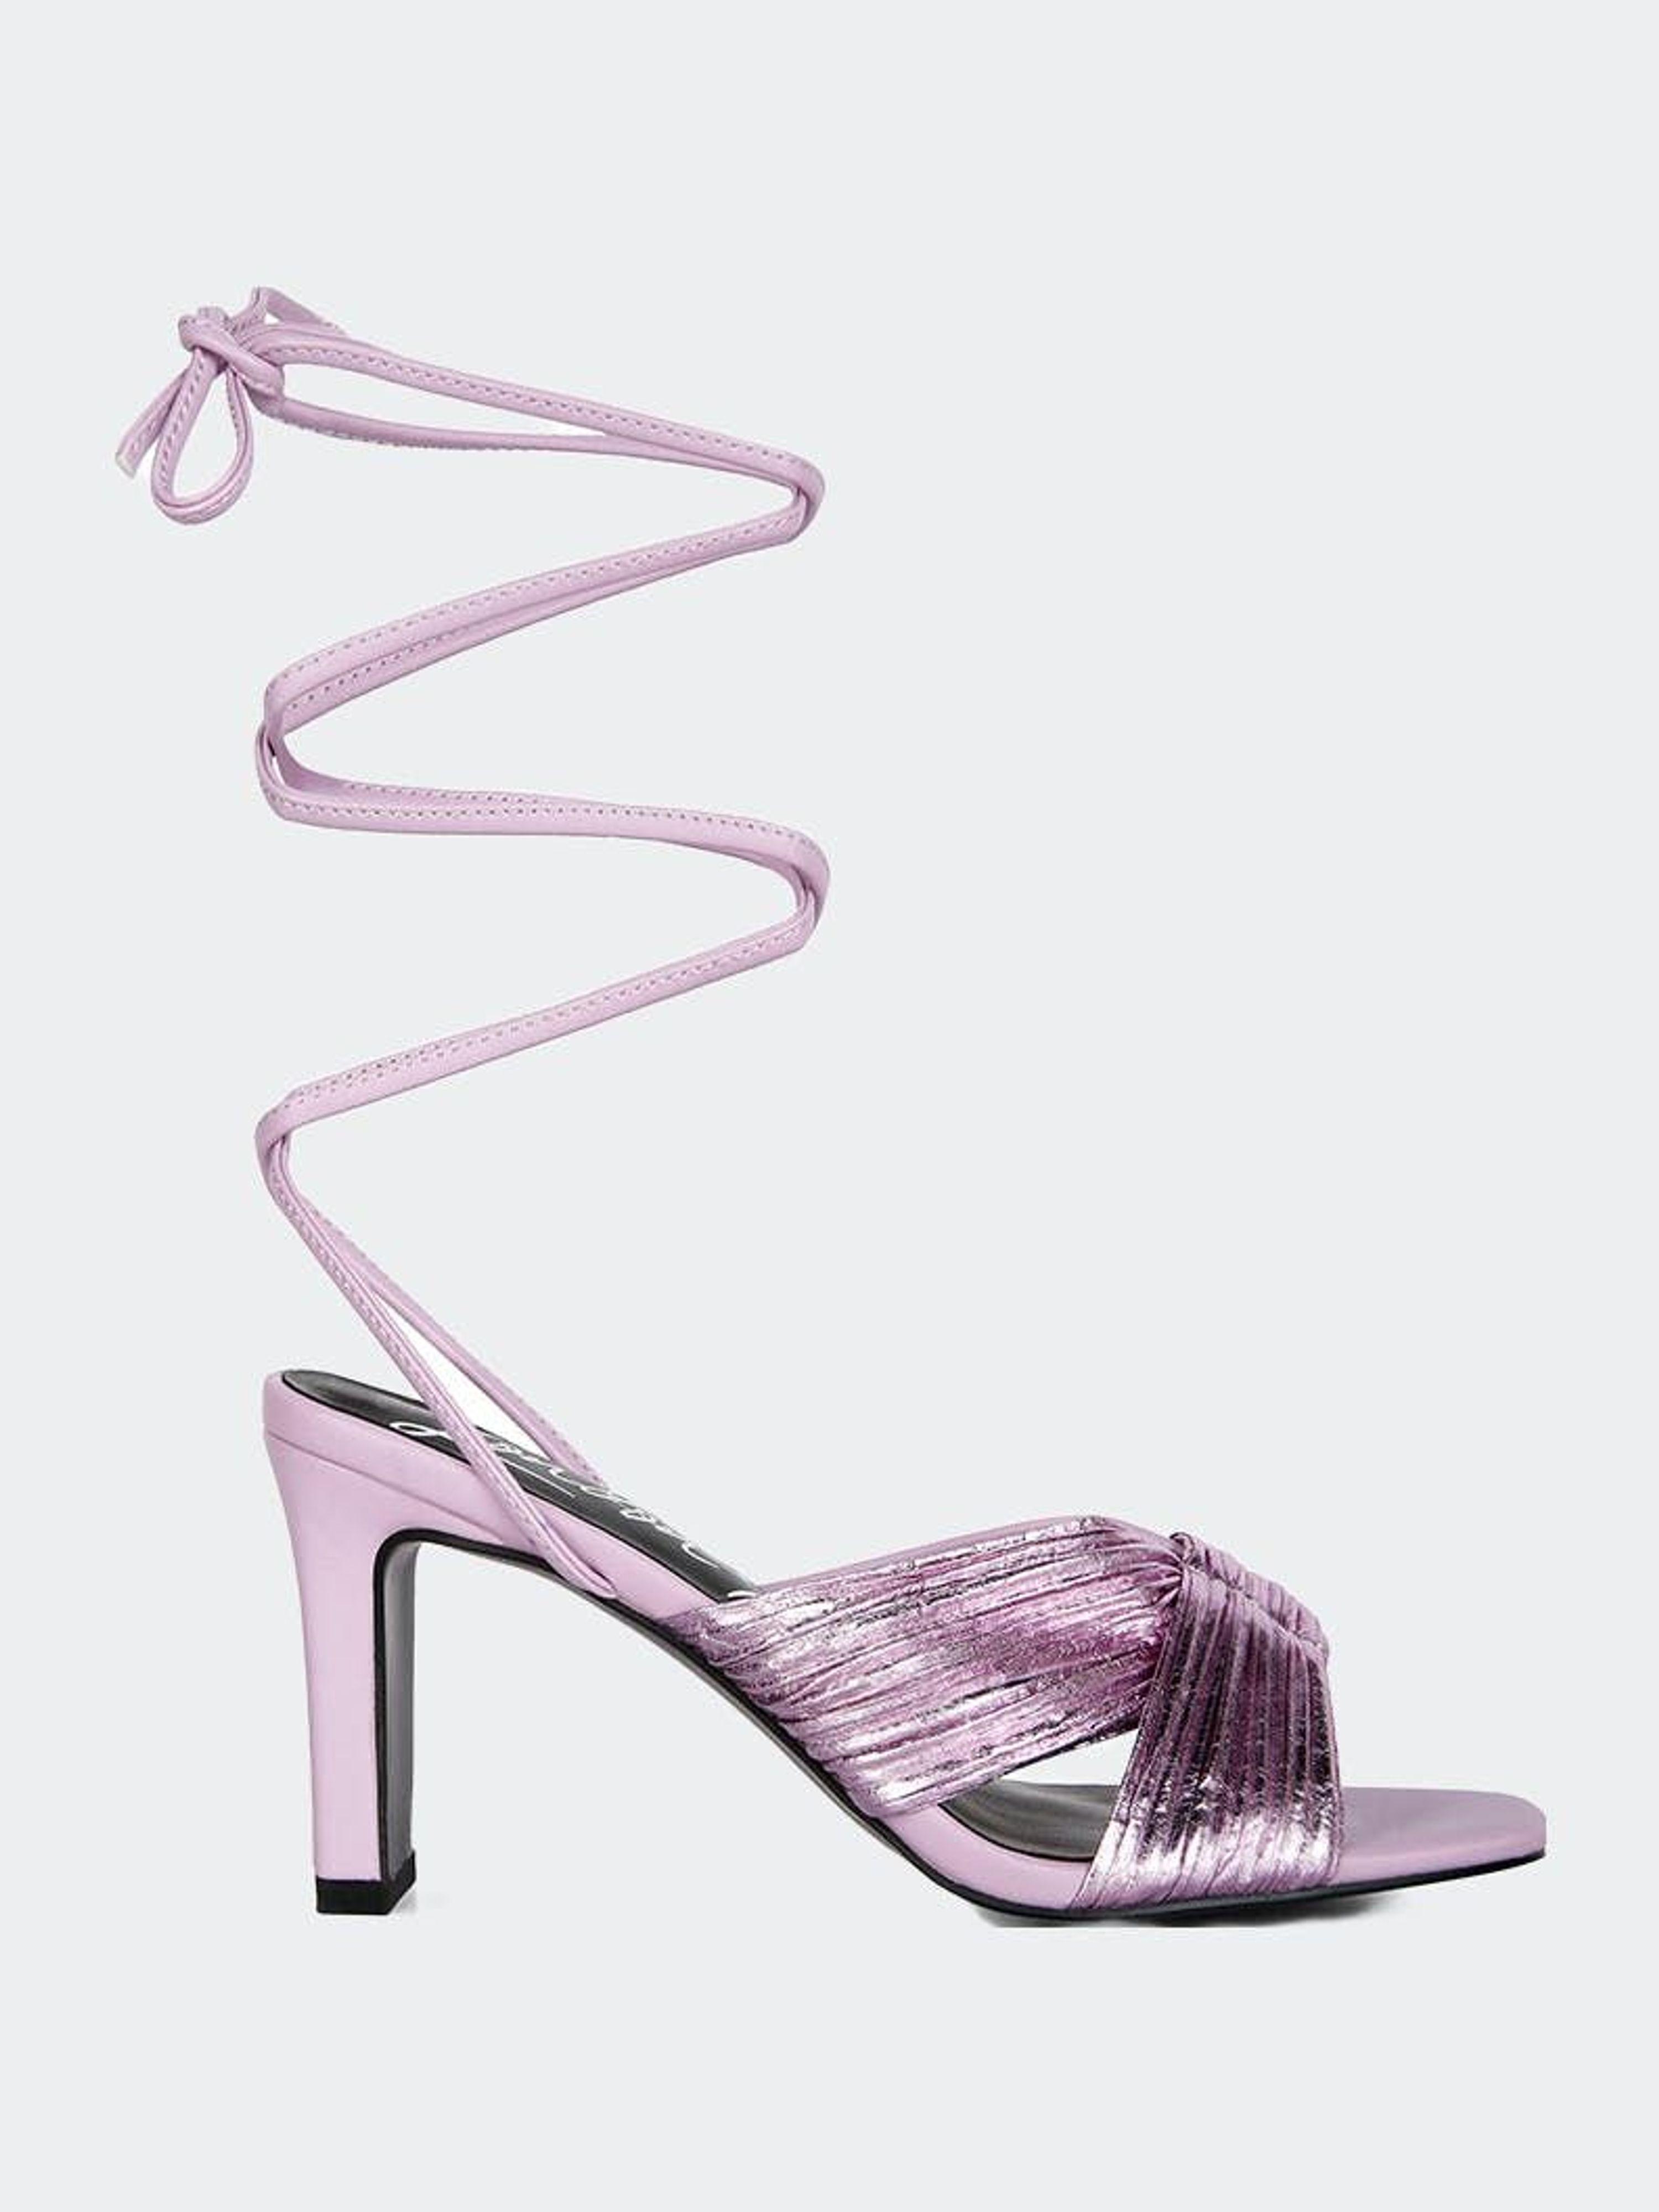 LONDON RAG Xuxa Metallic Tie Up Block Heel Sandals in Pink | Lyst